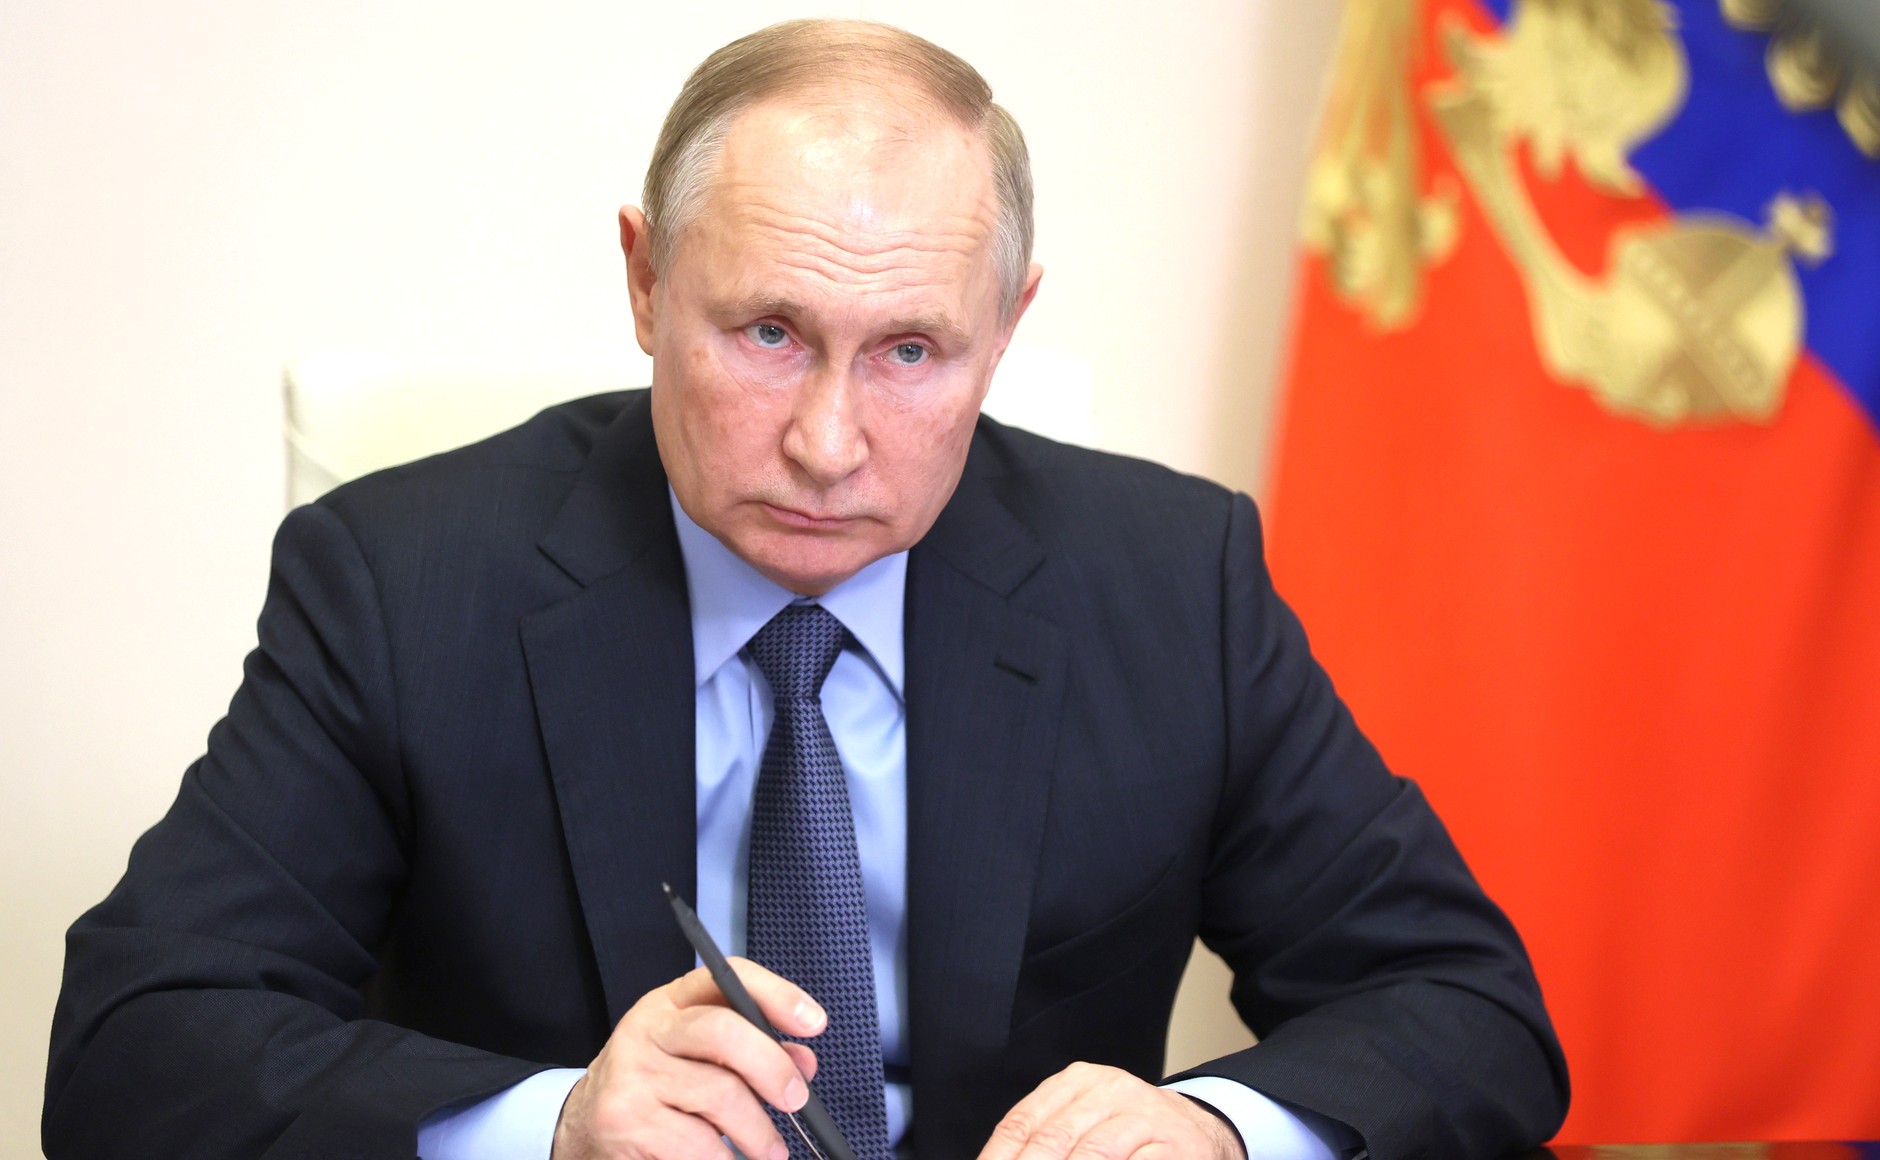 Putin u razgovoru s novinarima rekao kako situacija u Donbasu "podsjeća na genocid"